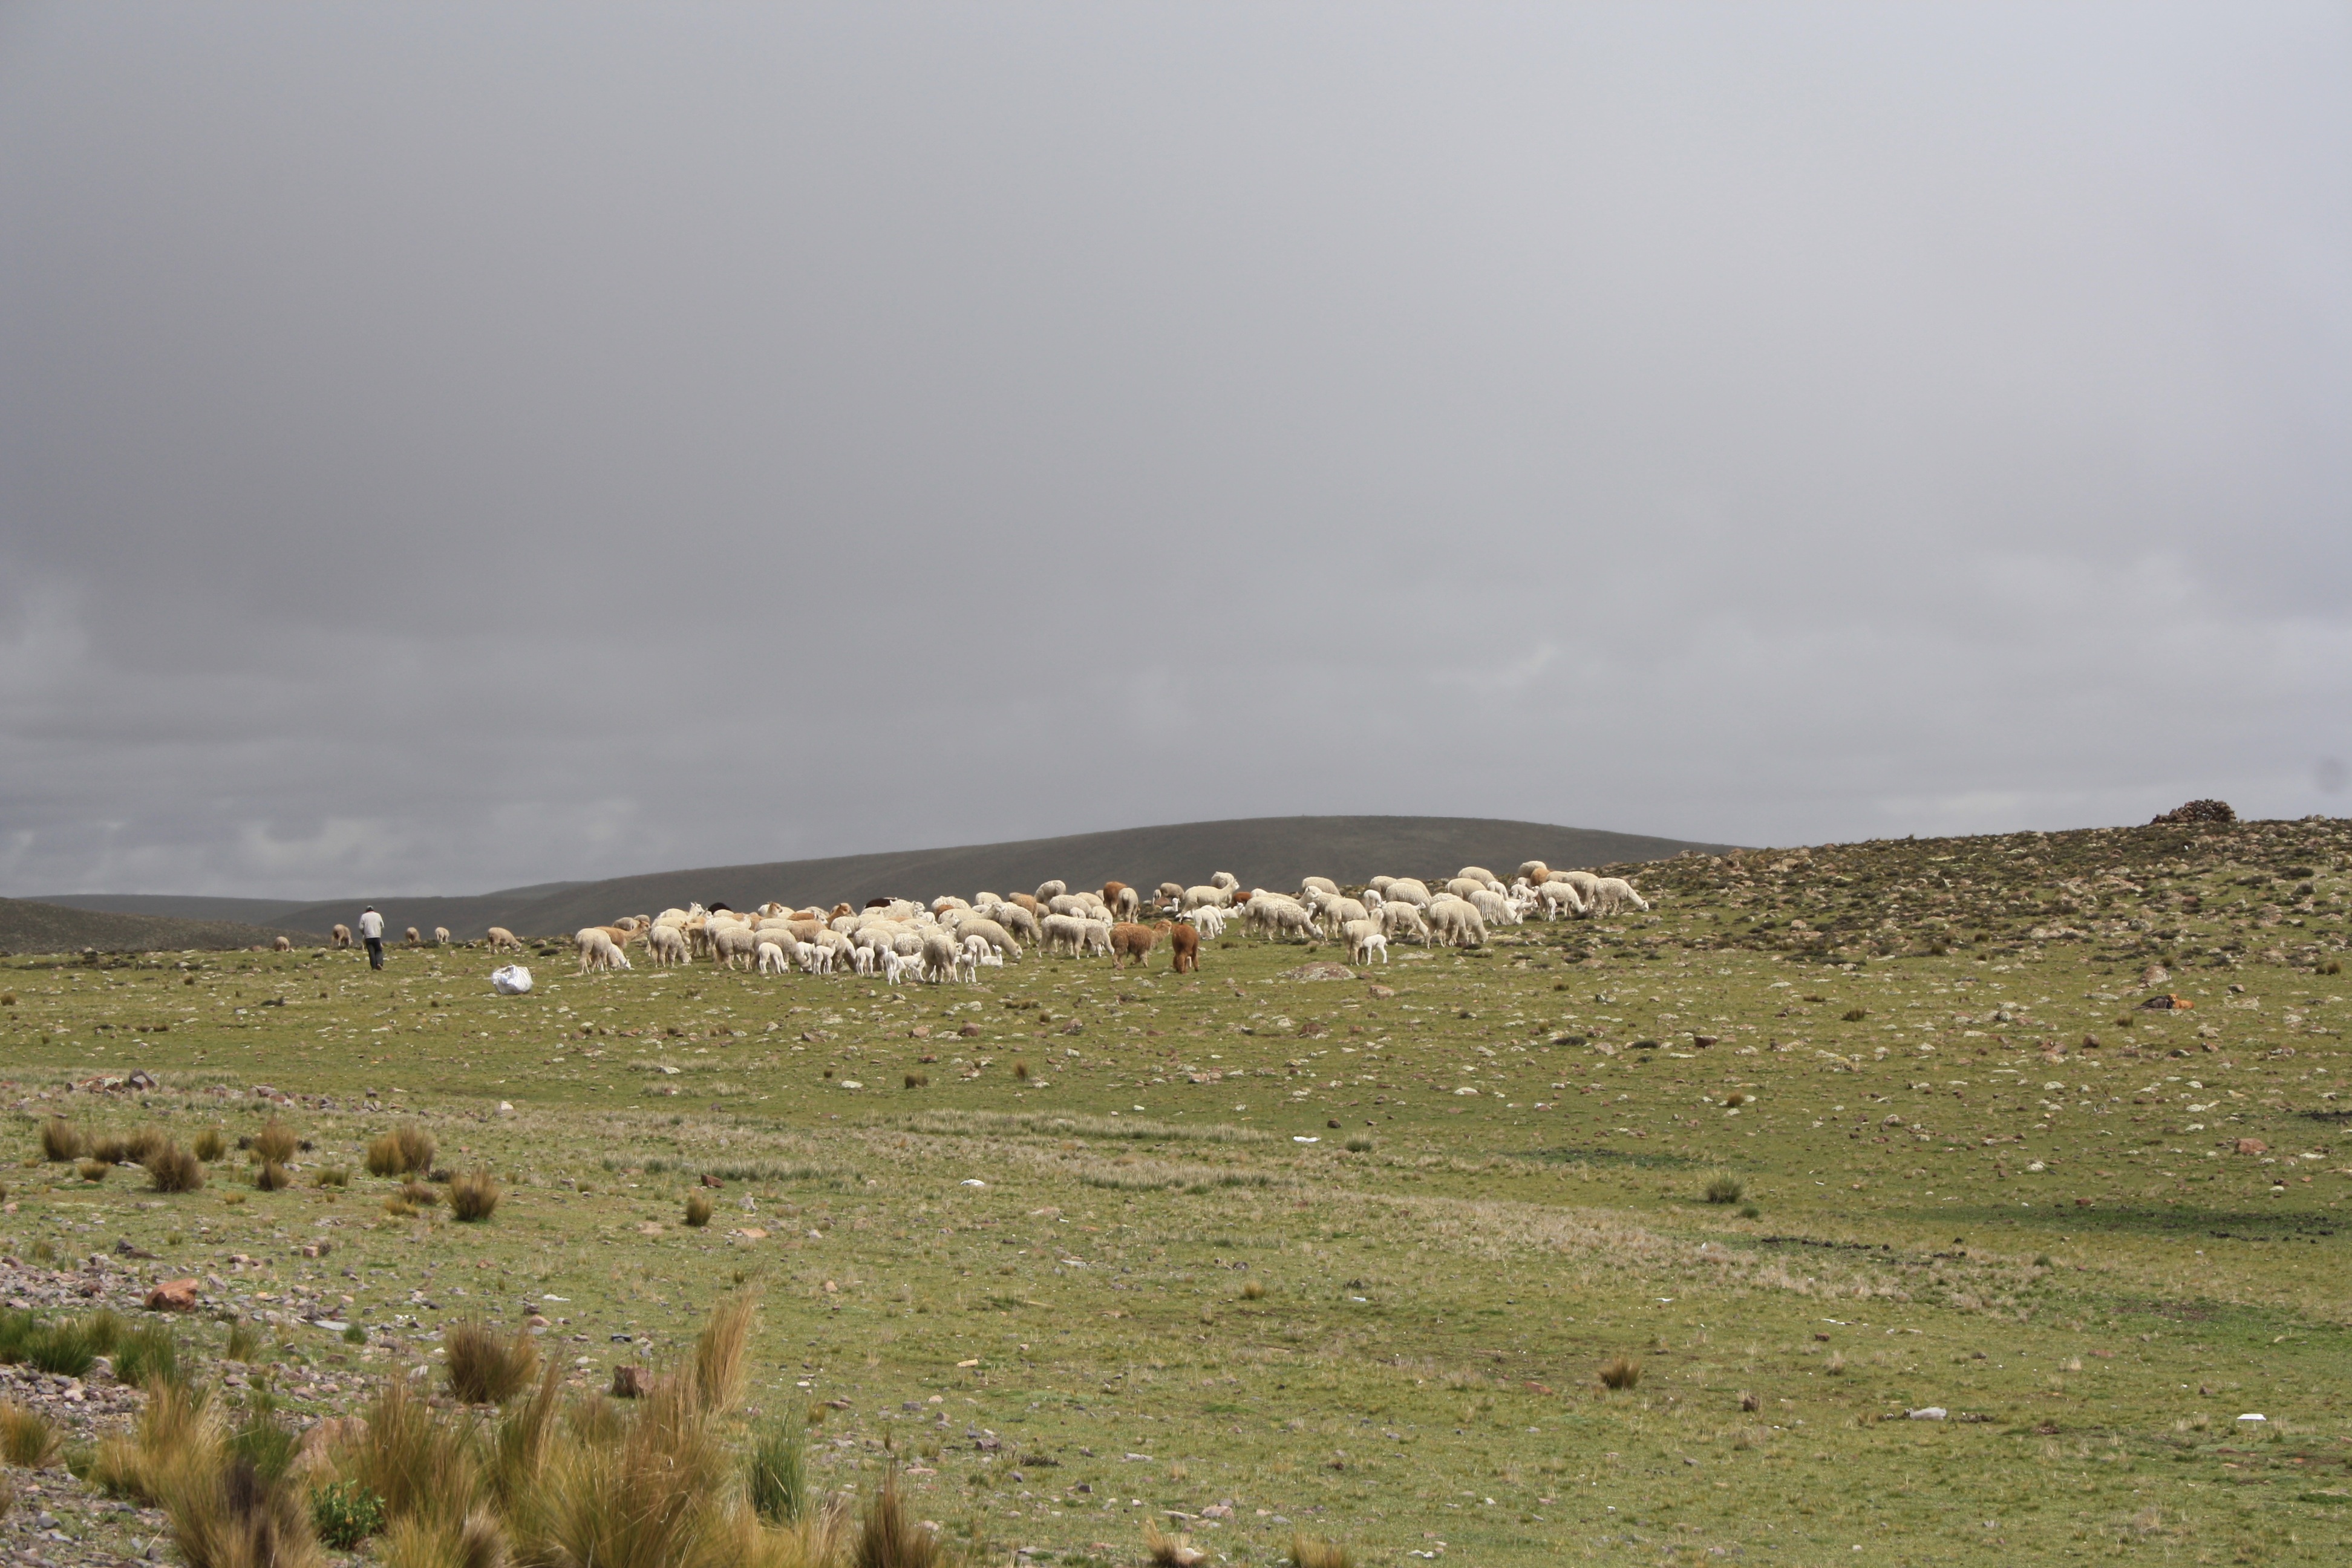 Llama herder